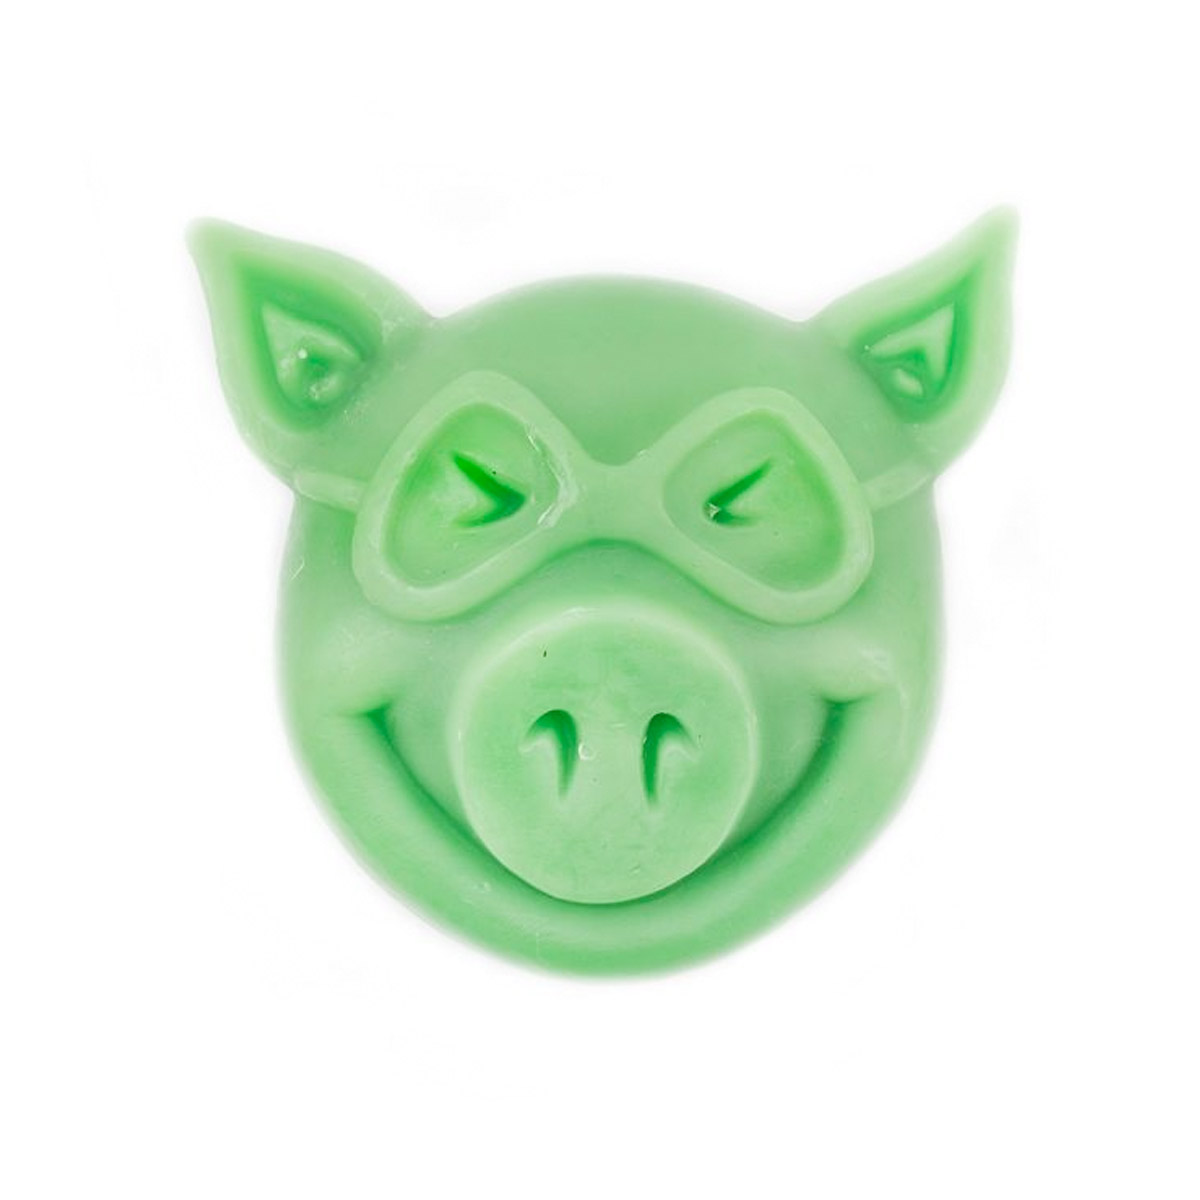 Pig Skatewachs Pig Head Curb Wax (green)